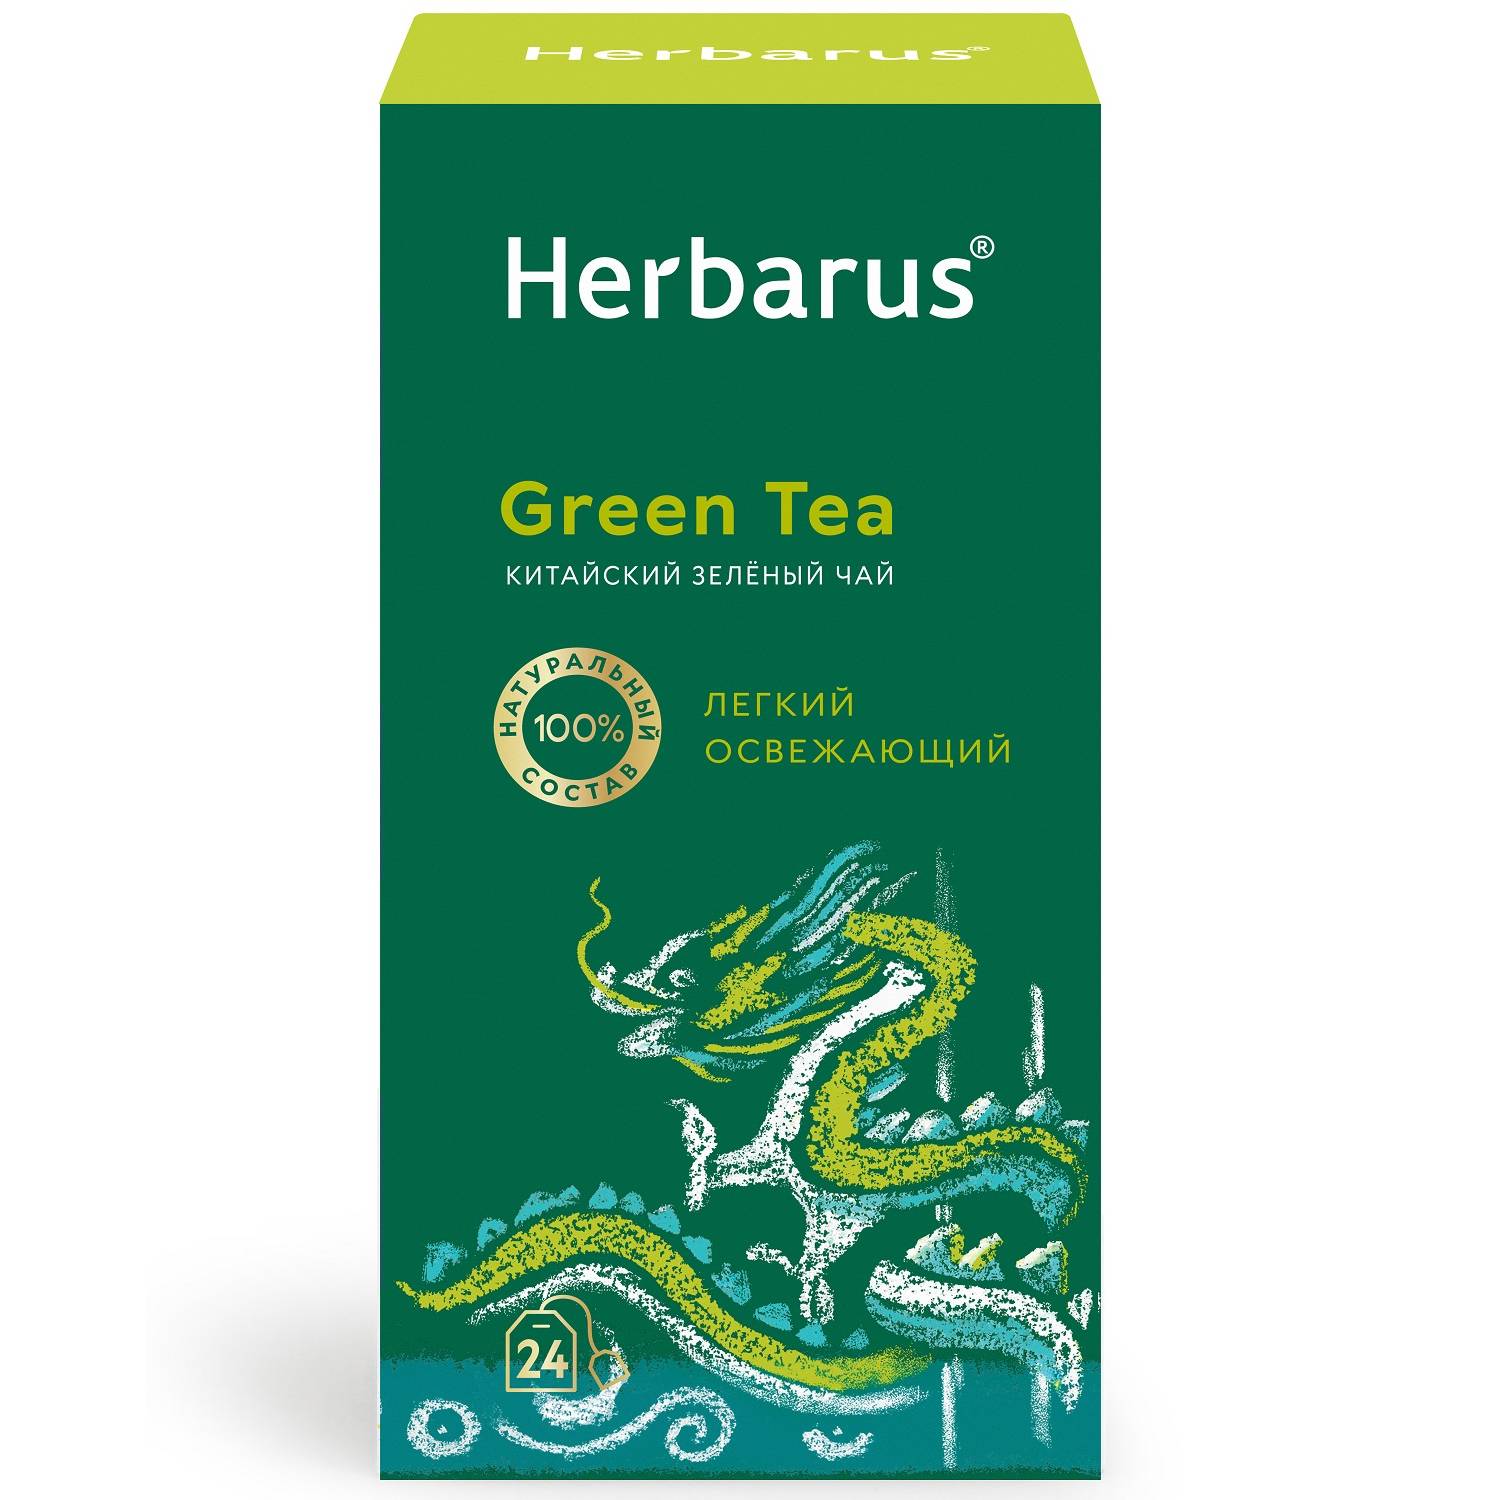 Herbarus Чай зеленый китайский Green Tea, 24 пакетика х 2 г (Herbarus, Классический чай) чай herbarus черный с добавками дикий терпкий 24 пакетика